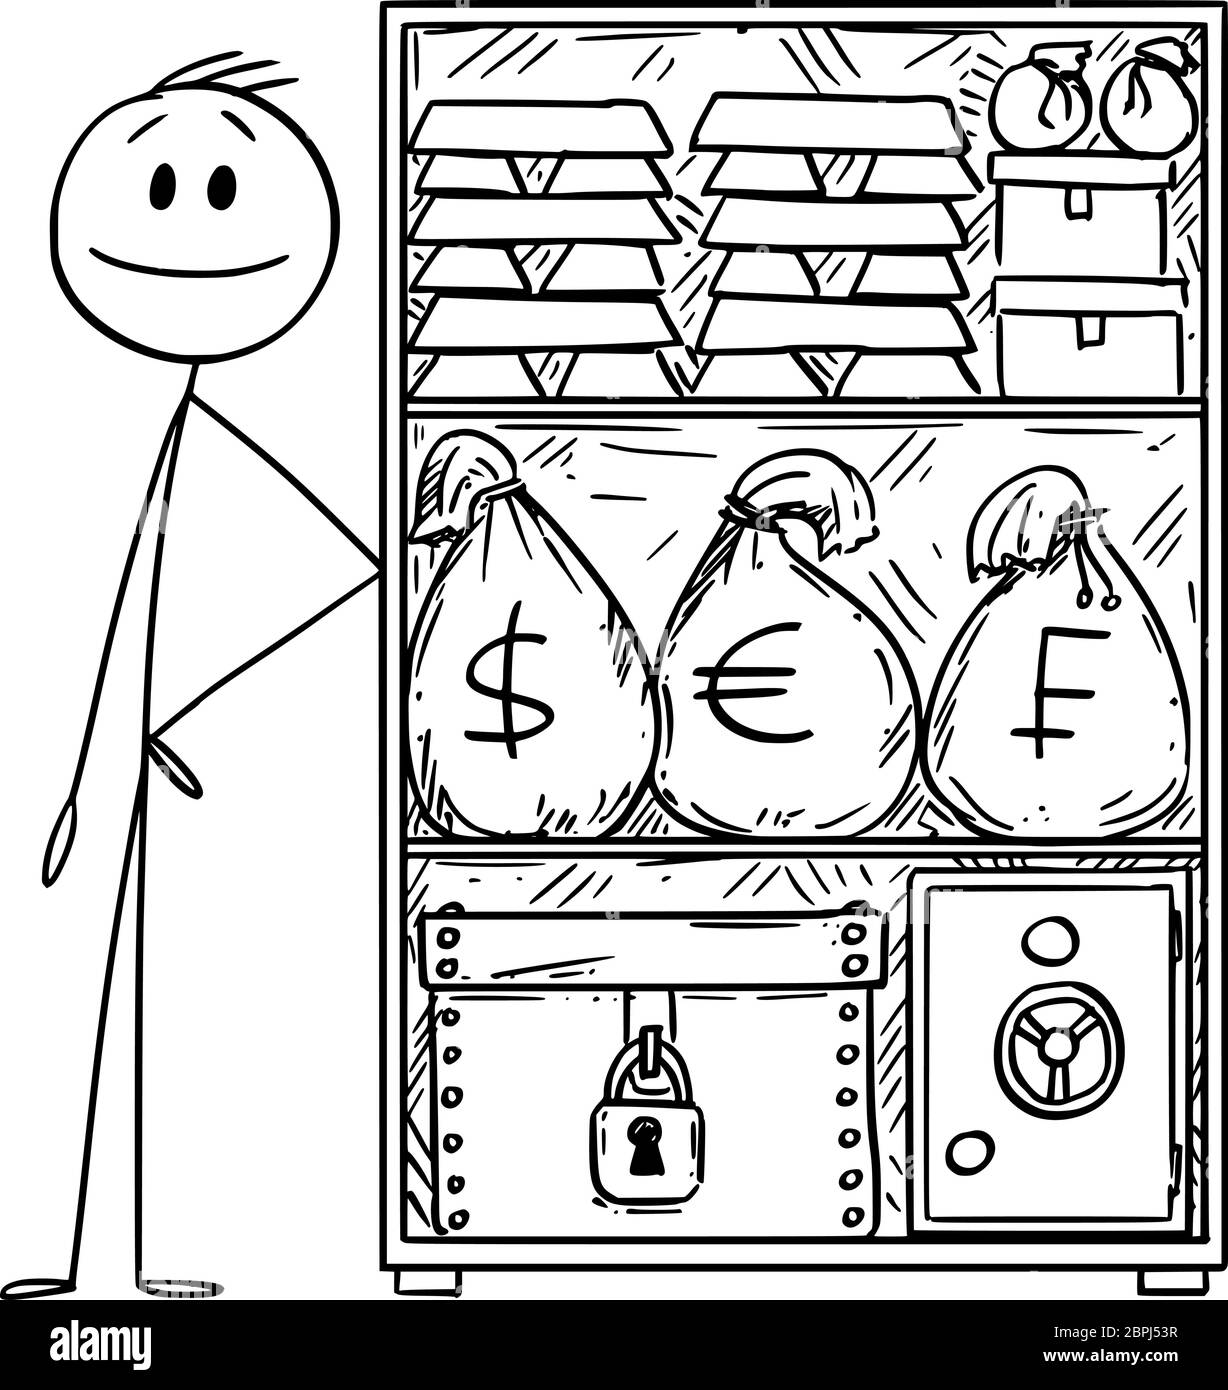 Figura vettoriale del cartone disegnando l'illustrazione concettuale di uomo ricco o ricco con scorta di denaro e oro per la crisi. Illustrazione Vettoriale